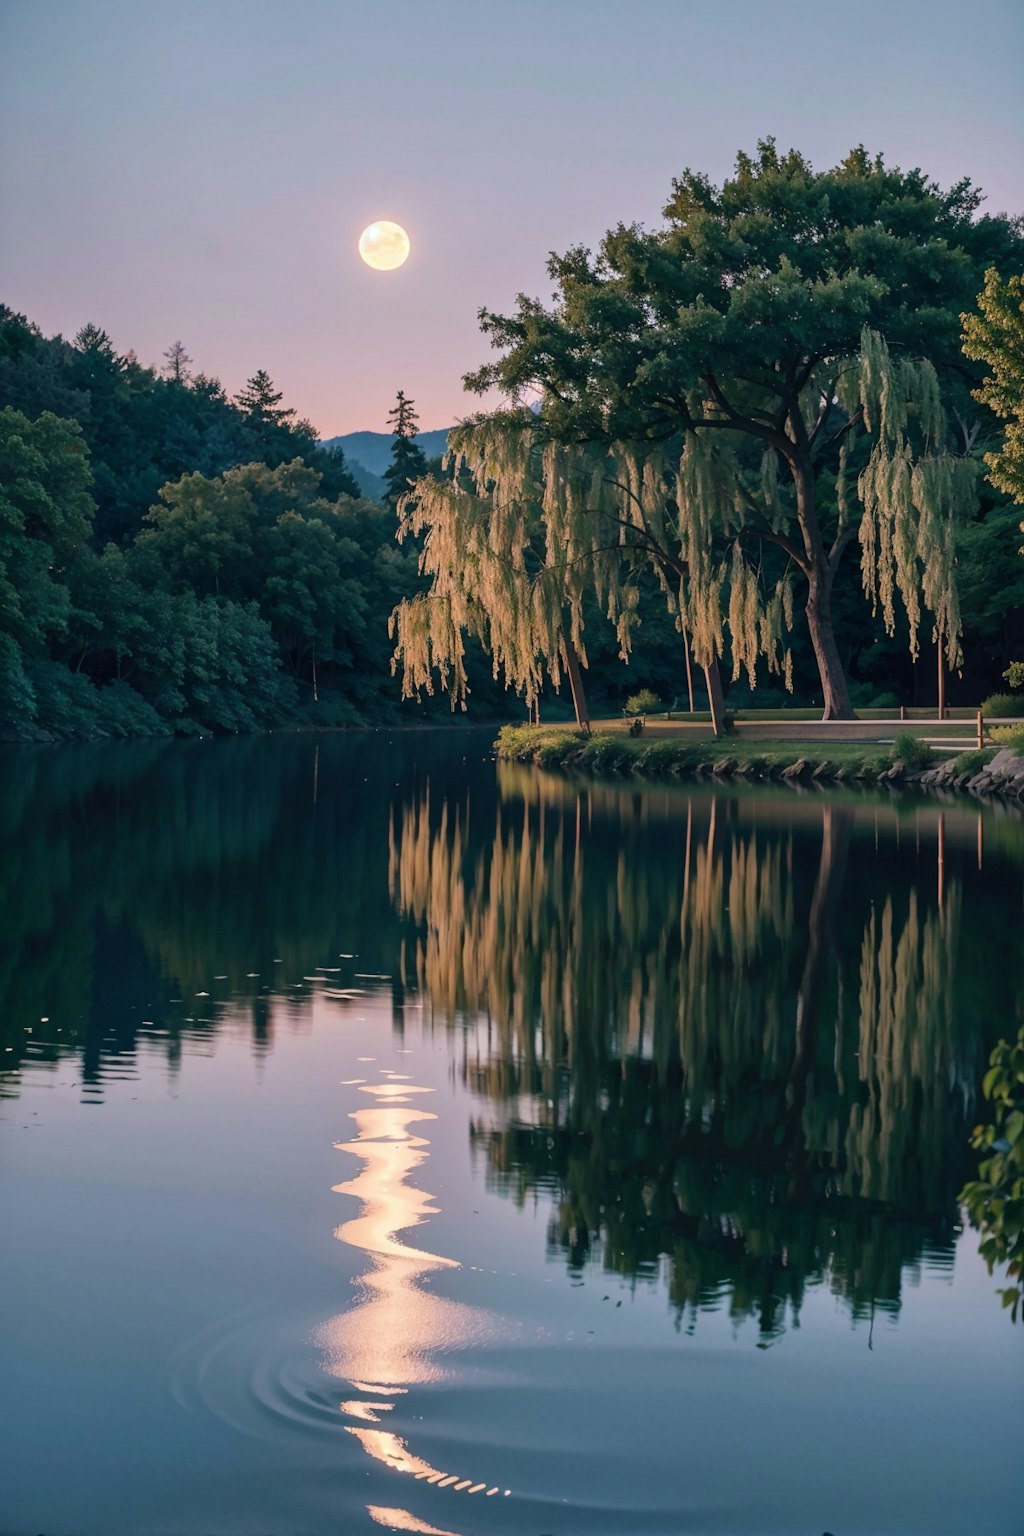 湖面に映る美しい月灯り